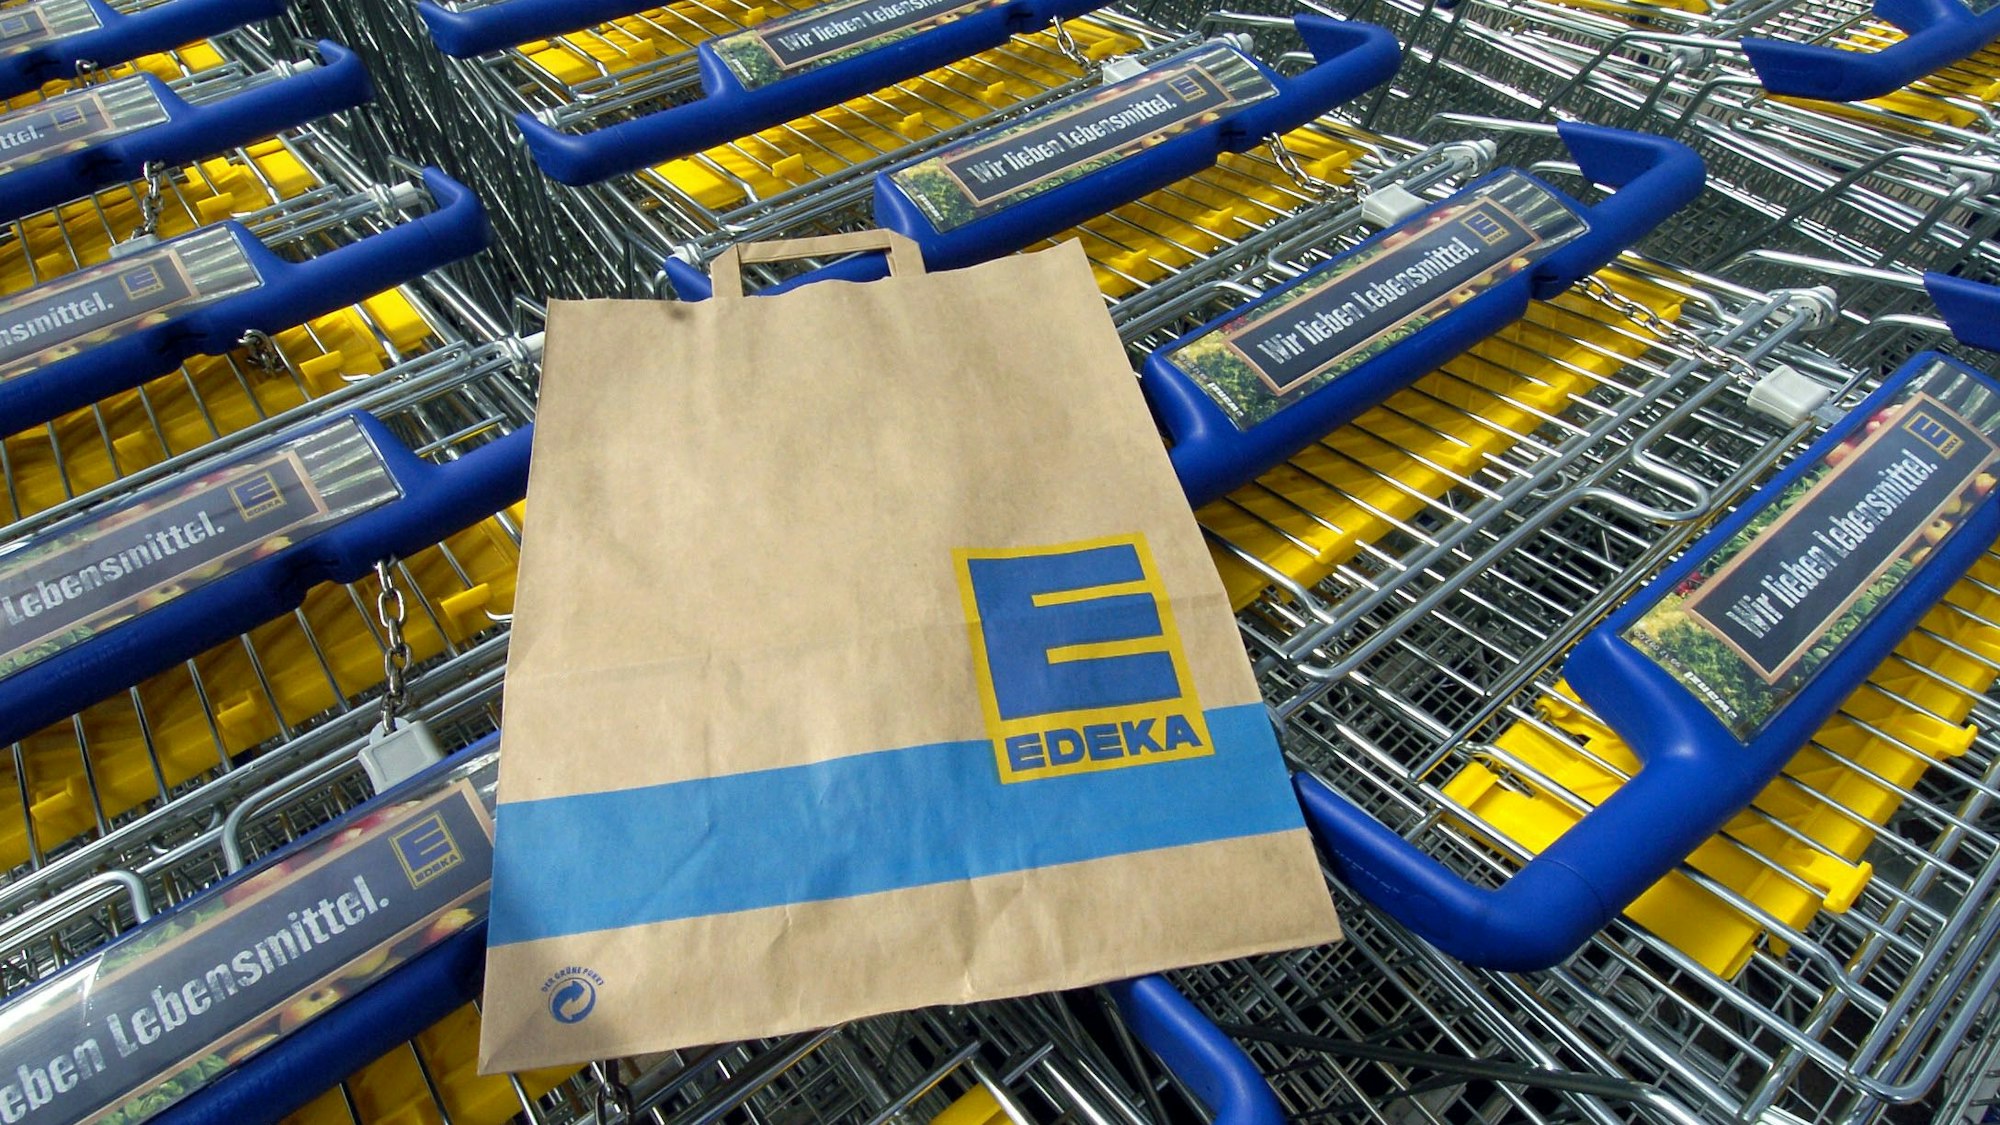 Das Symbolbild zeigt mehrere Einkaufswagen und eine Einkaufstüte des Supermarktes Edeka. Aufgenommen wurde das Bild am28. April 2005.